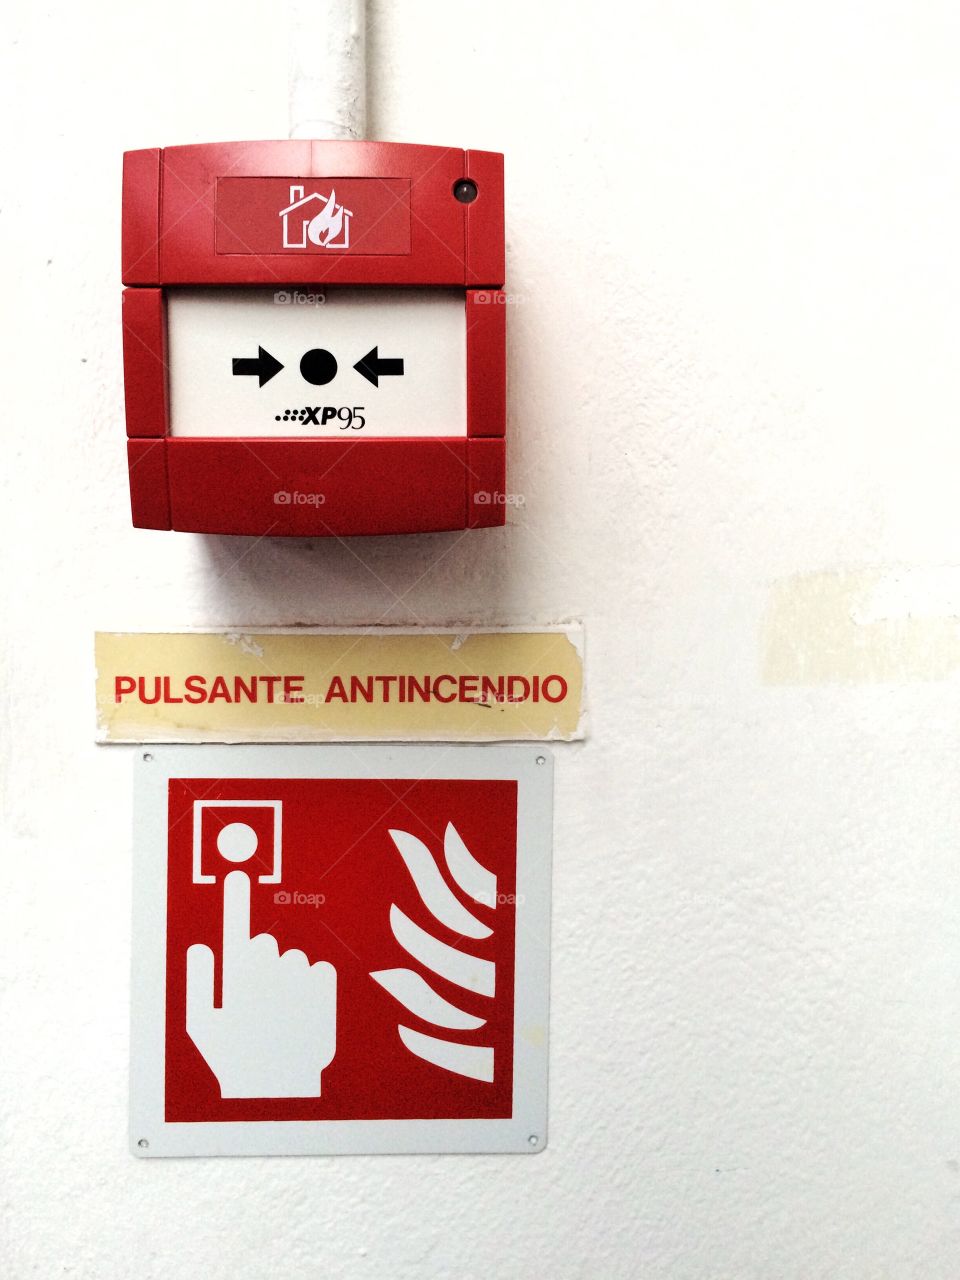 Antincendio - Fire alarm 